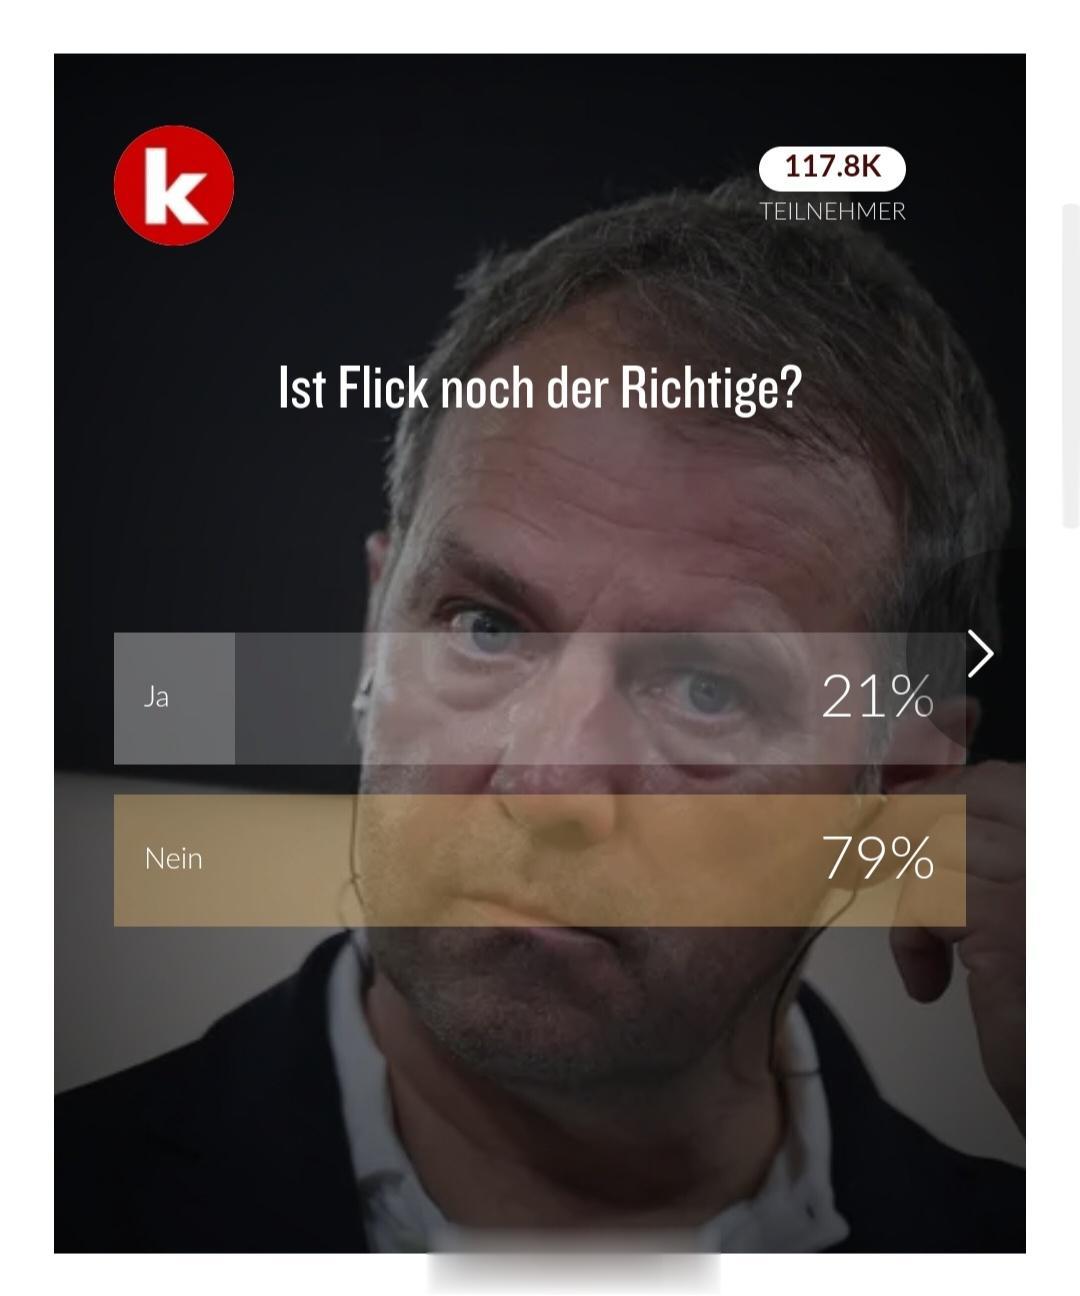 kicker民调，弗利克还合适吗？认为合适的只有21%。燃鹅，德国足协主席诺伊恩(1)